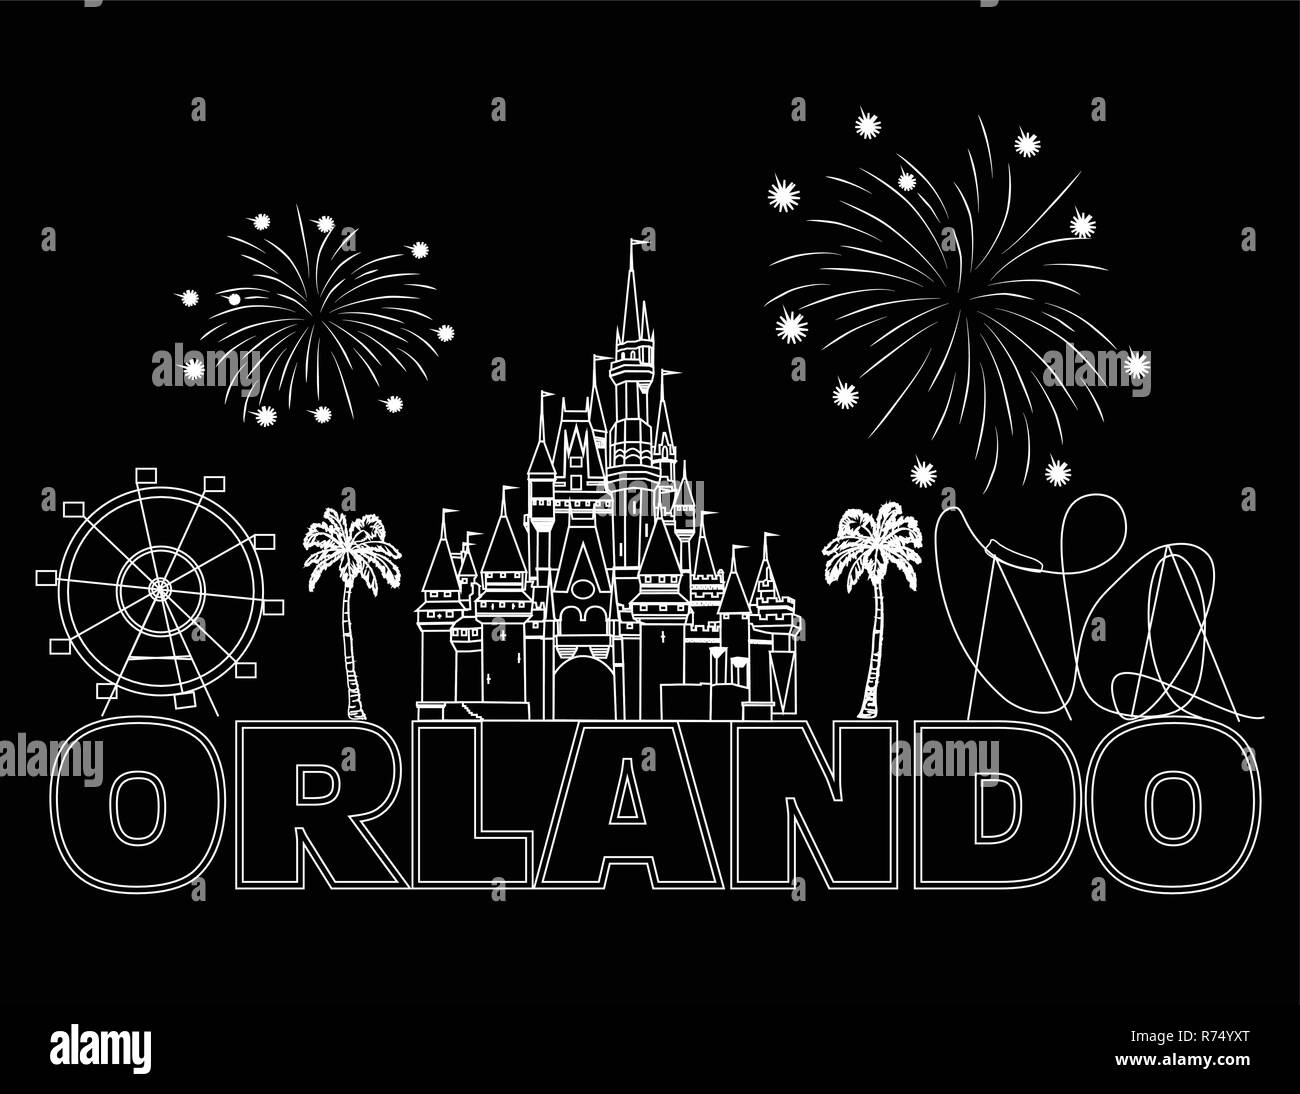 Orlando, weisser Schrift auf schwarzem Hintergrund. Vektor mit Reisen Symbole und Feuerwerk. Reisen Postkarte. Stock Vektor